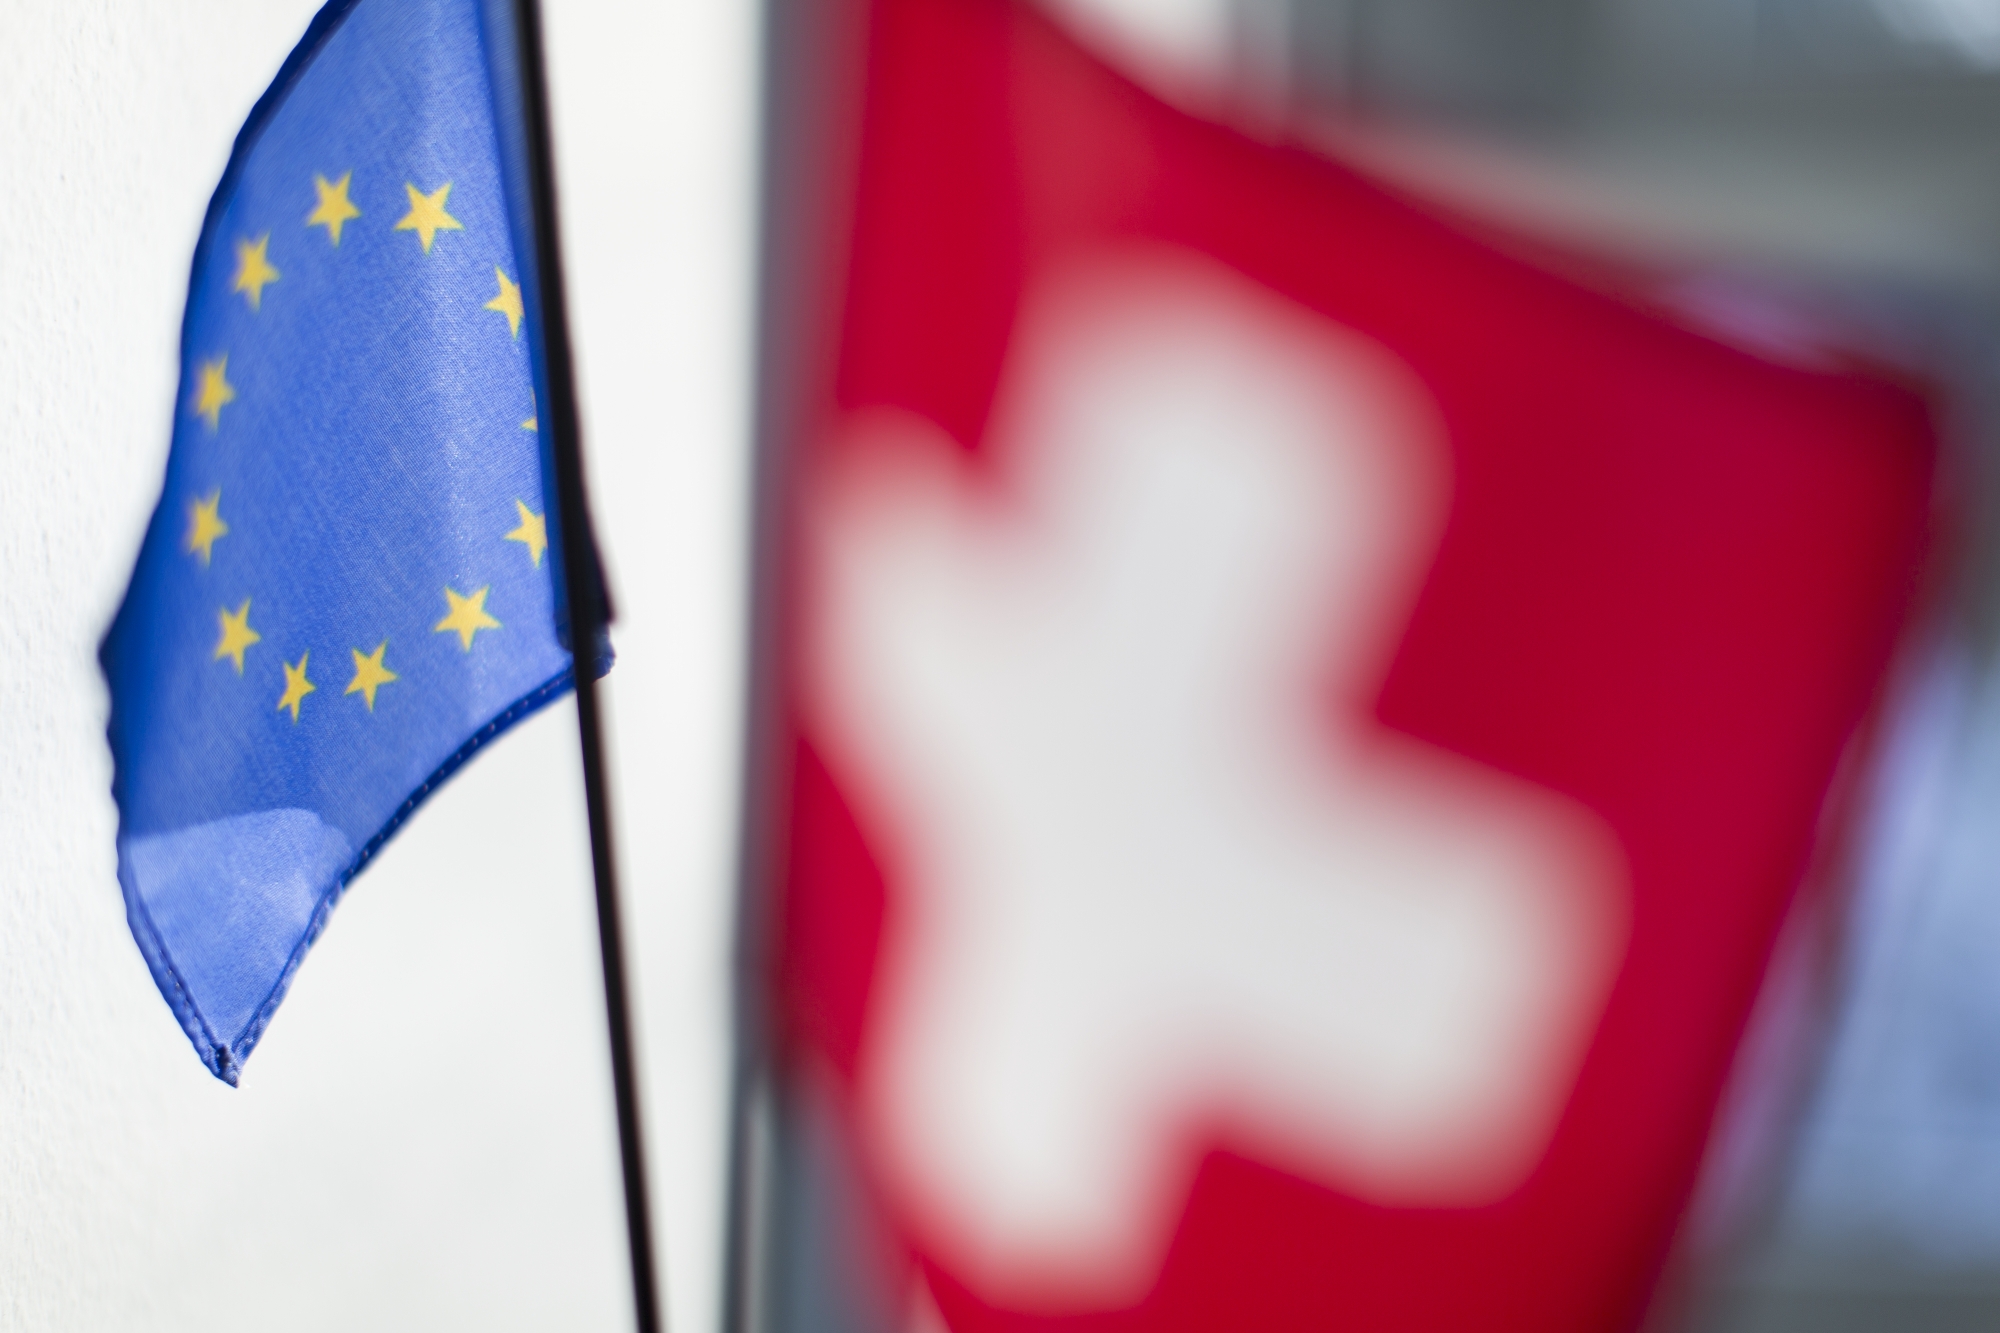 A Swiss and a European Union table flag, captured in an office space in Zurich, Switzerland on February 12, 2015. (KEYSTONE/Gaetan Bally)

Eine Schweizer und eine EU Tischfahne aufgenommen am 12. Februar 2015 in einem Buero in Zurich. (KEYSTONE/Gaetan Bally)